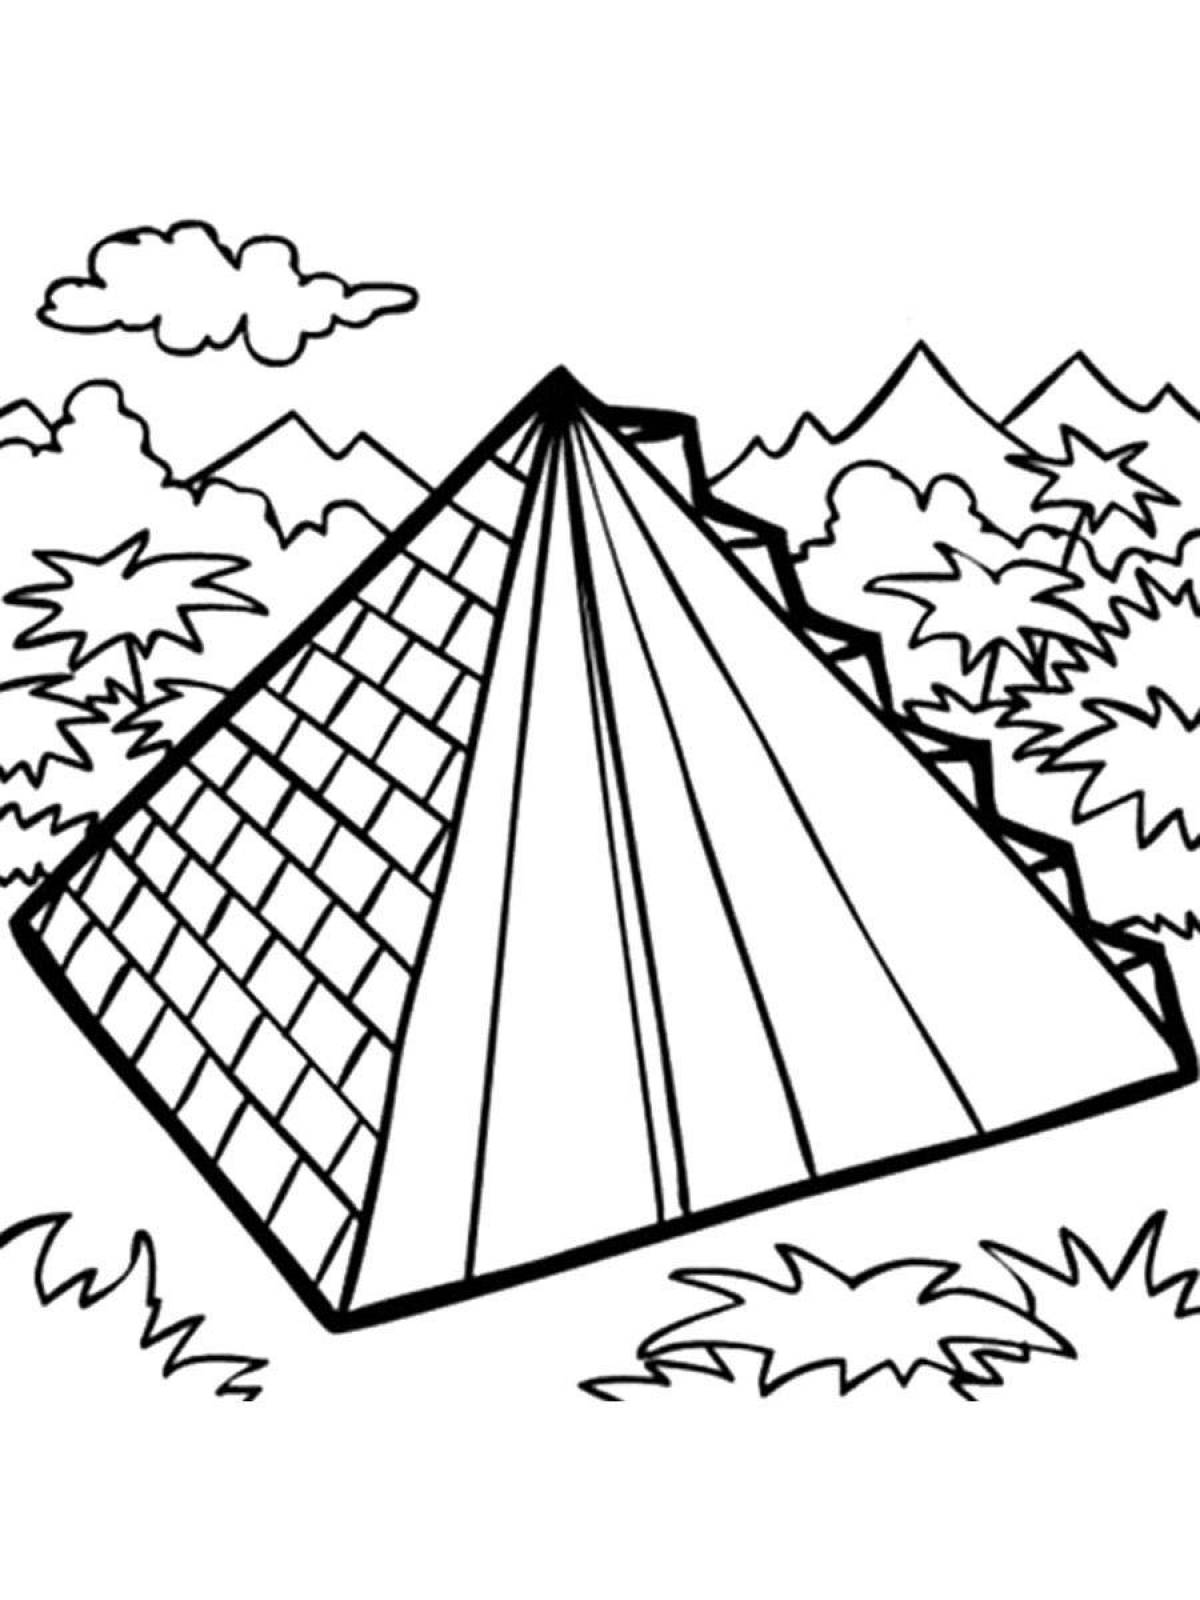 Дом в виде пирамиды рисунок